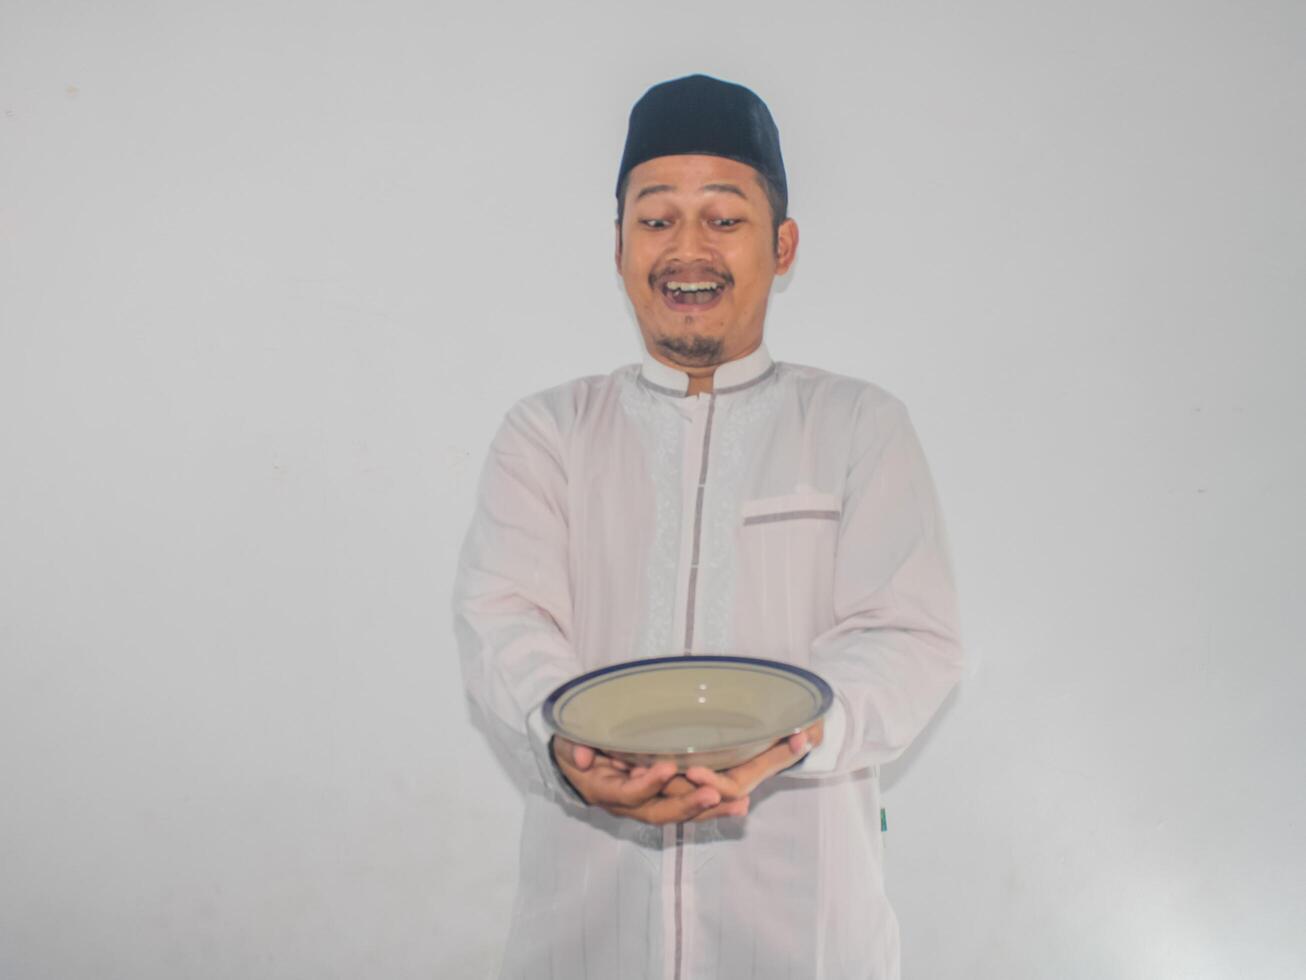 musulman asiatique homme souriant content tandis que en portant vide dîner assiette photo